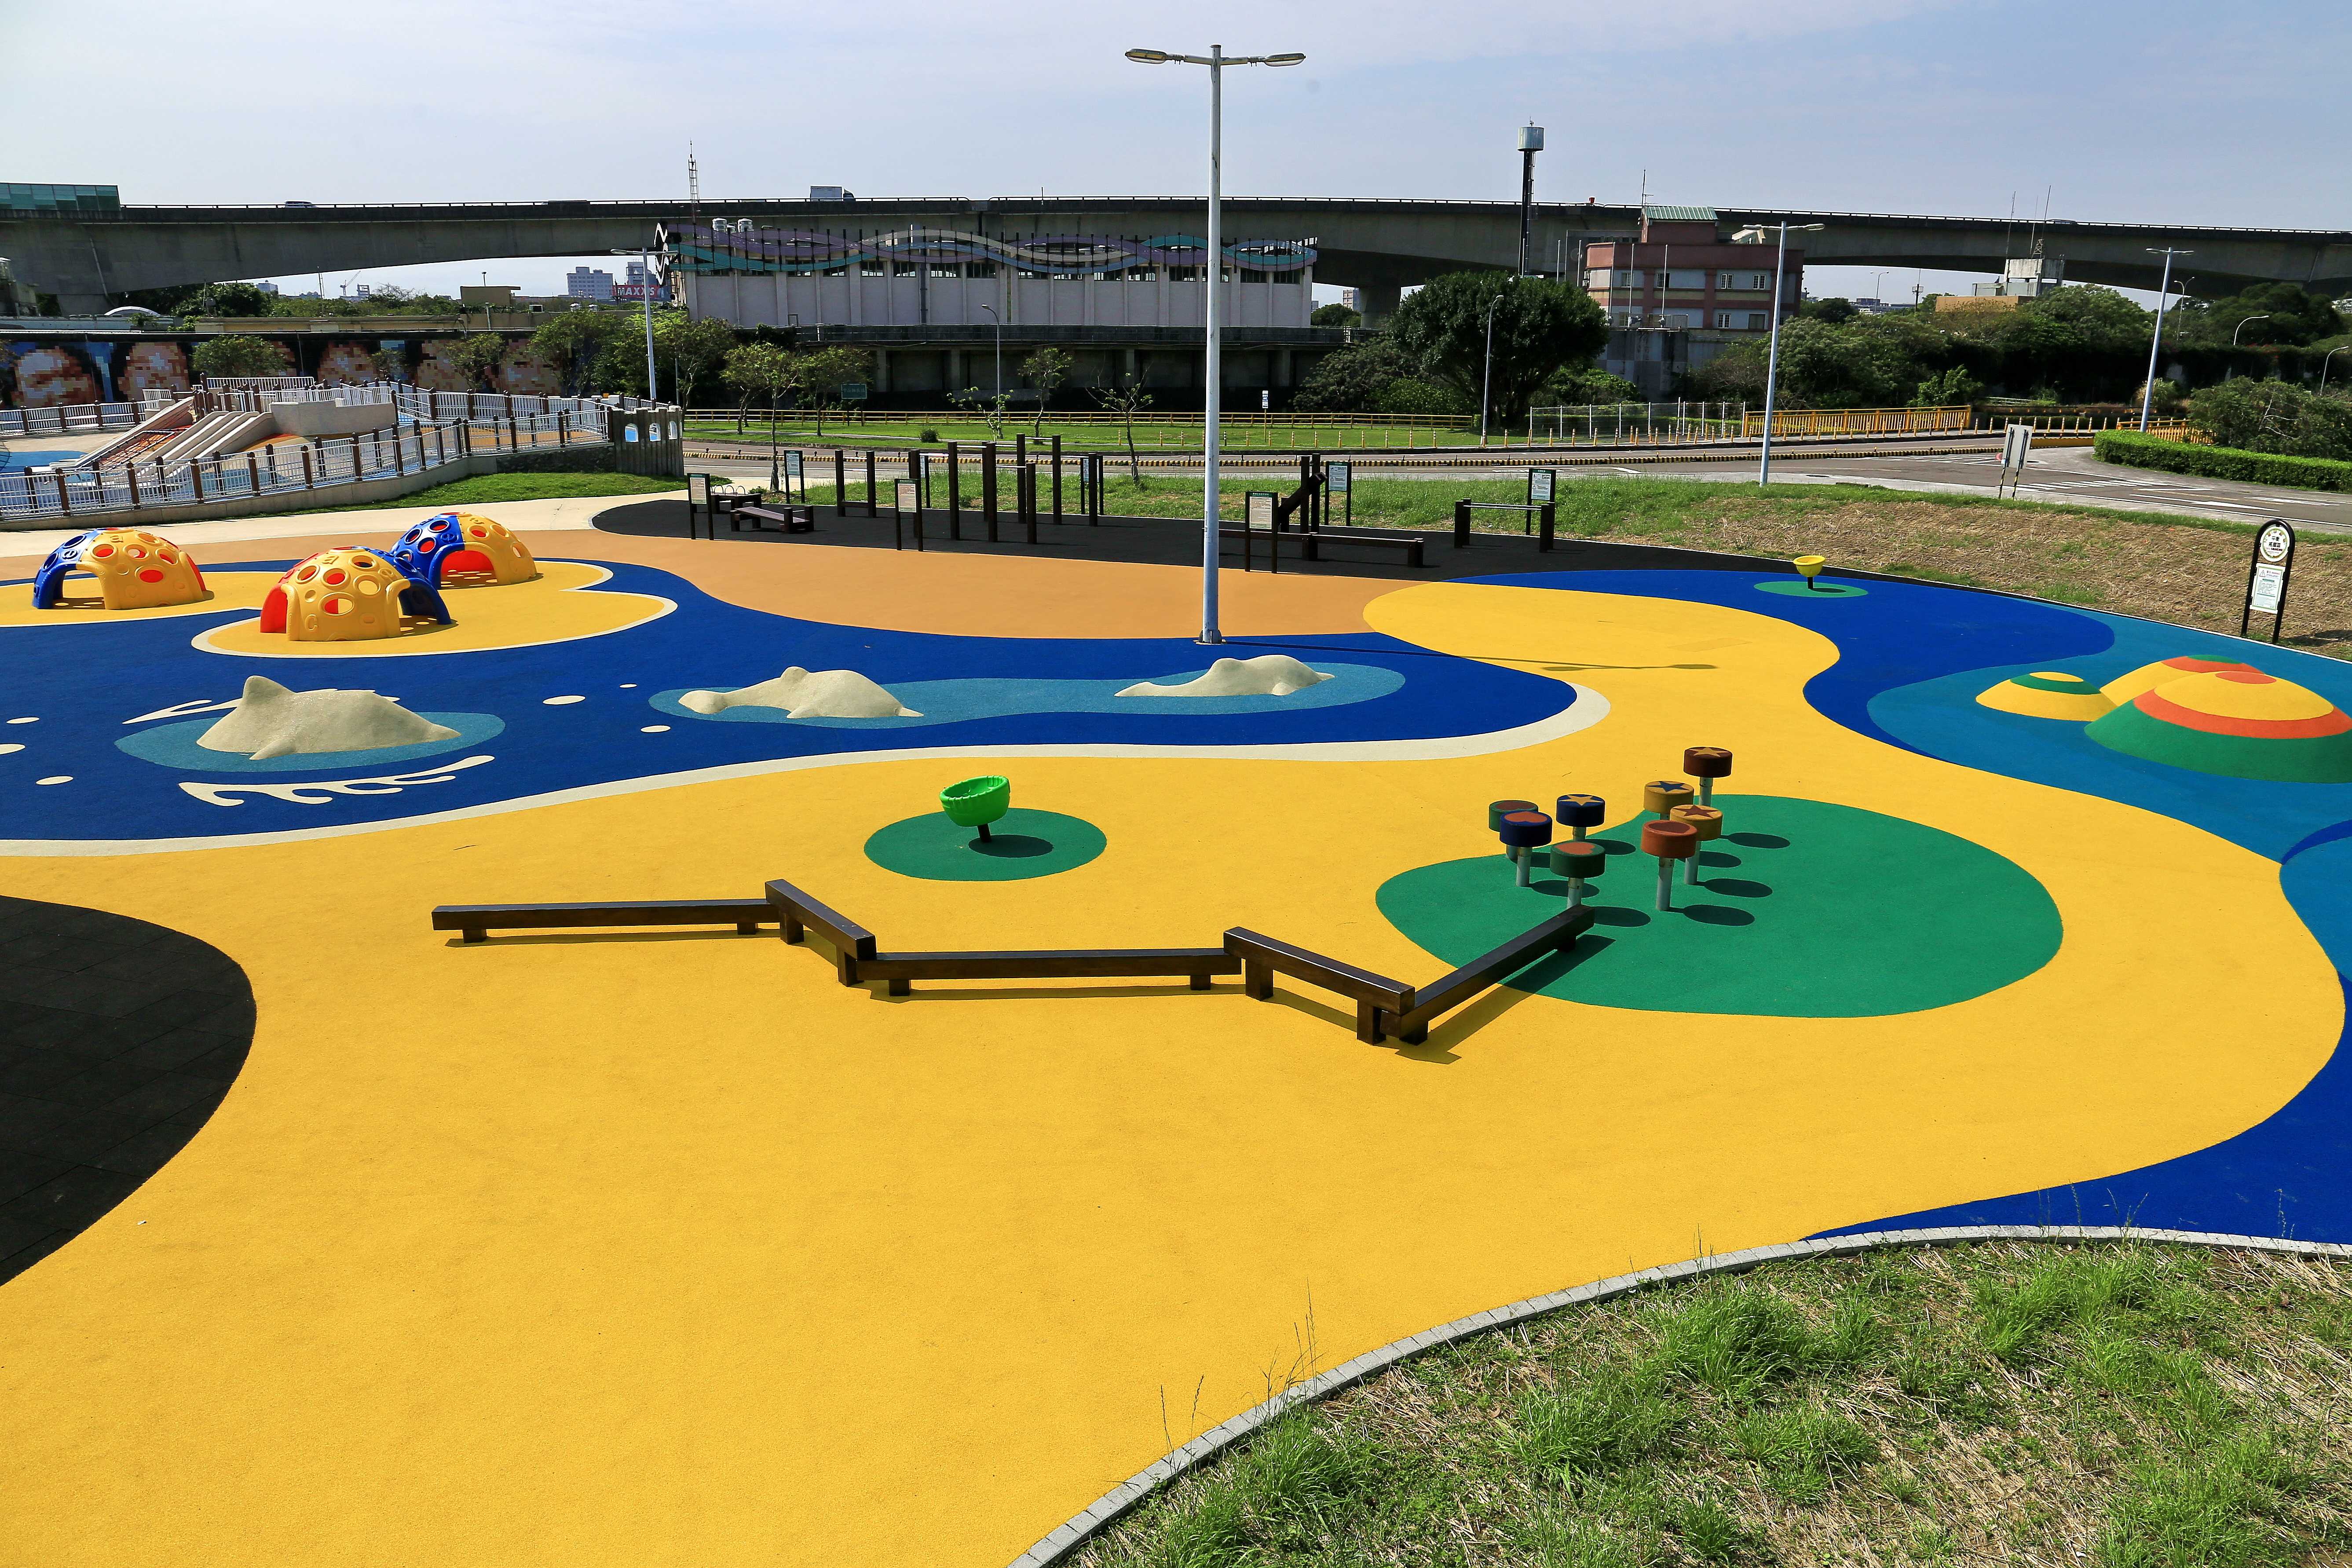 Pemerintah Taipei dan New Taipei mengumumkan bahwa fasilitas permainan bagi anak-anak di taman umum dapat kembali digunakan oleh publik mulai tanggal 1 Oktober. Sumber: Kantor Teknik Irigasi Biro Konstruksi Publik Pemerintah Kota Taipei)